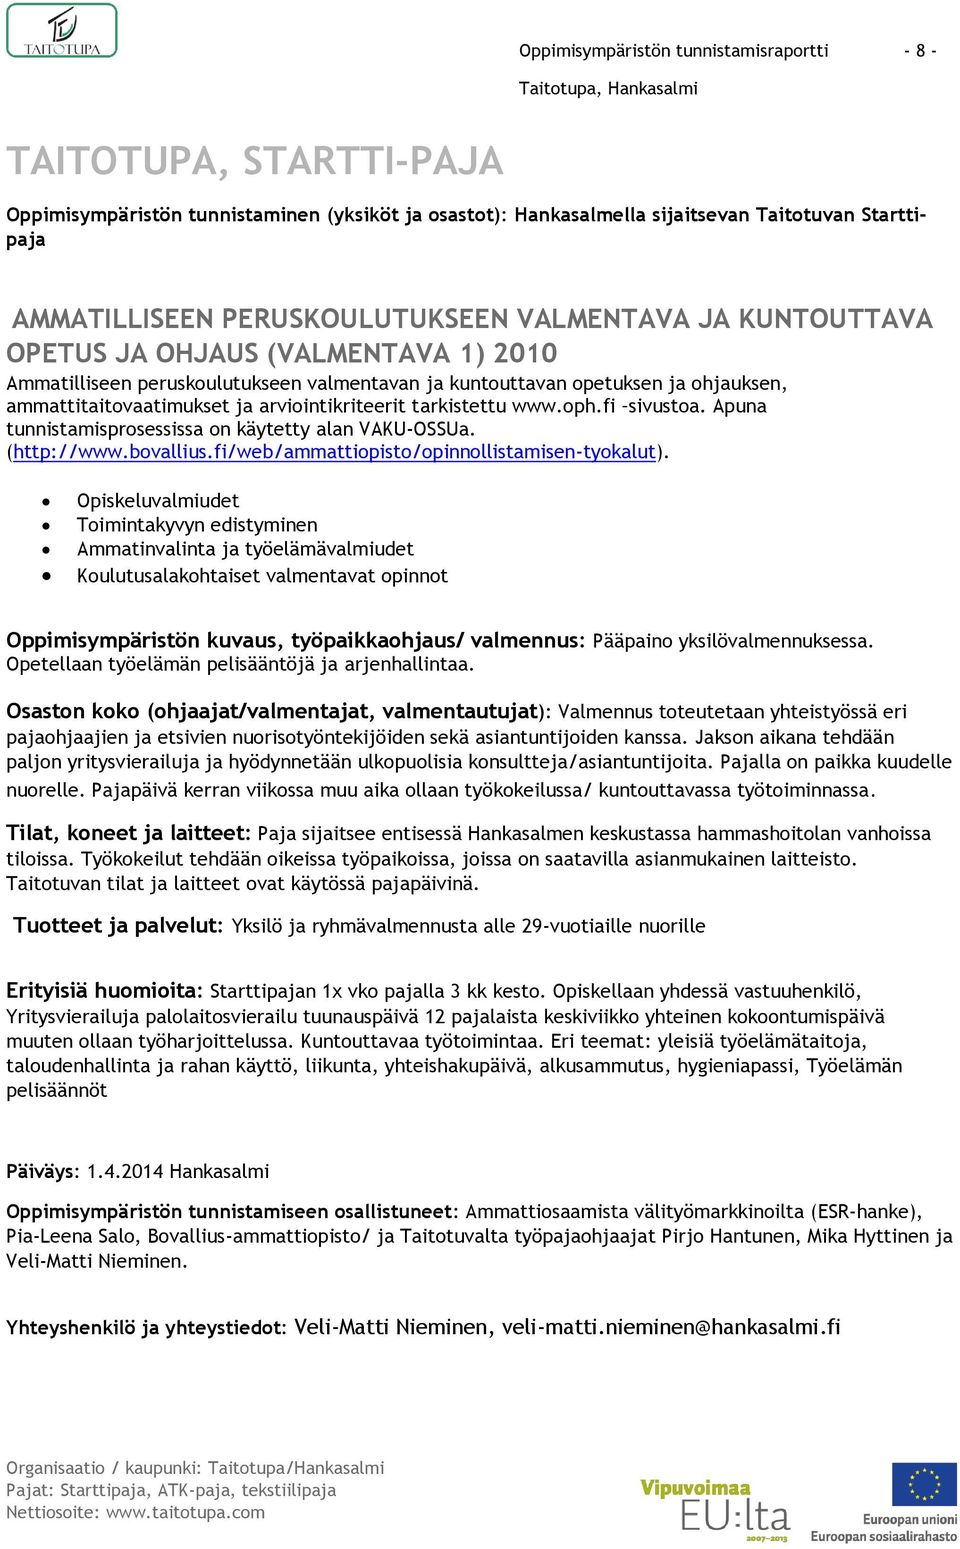 arviointikriteerit tarkistettu www.oph.fi sivustoa. Apuna tunnistamisprosessissa on käytetty alan VAKU-OSSUa. (http://www.bovallius.fi/web/ammattiopisto/opinnollistamisen-tyokalut).